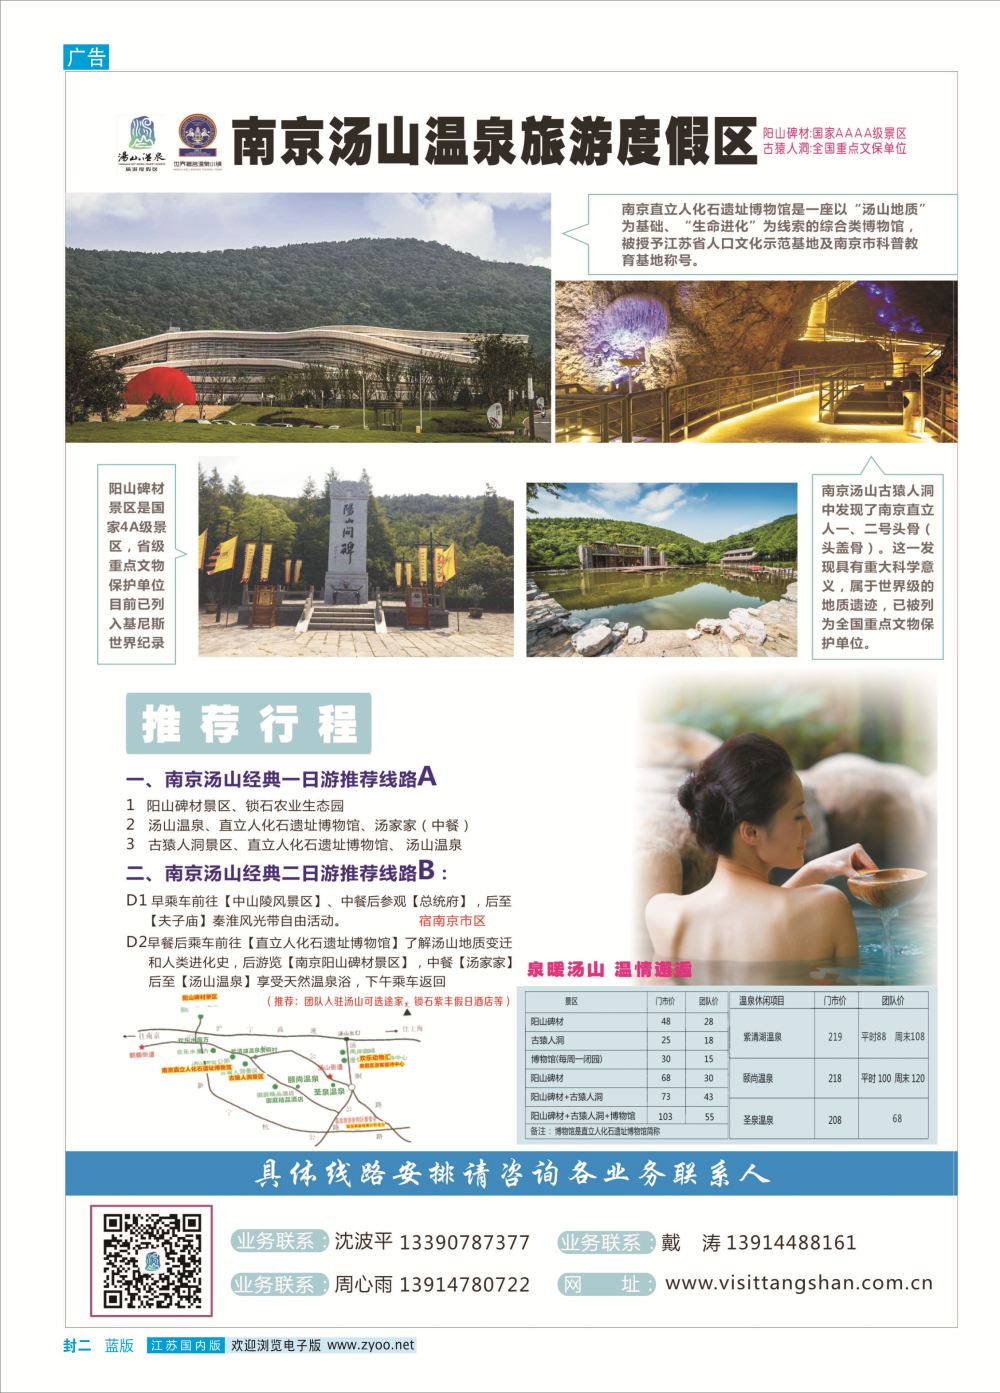 封二南京汤山温泉旅游度假区｛03044｝景区